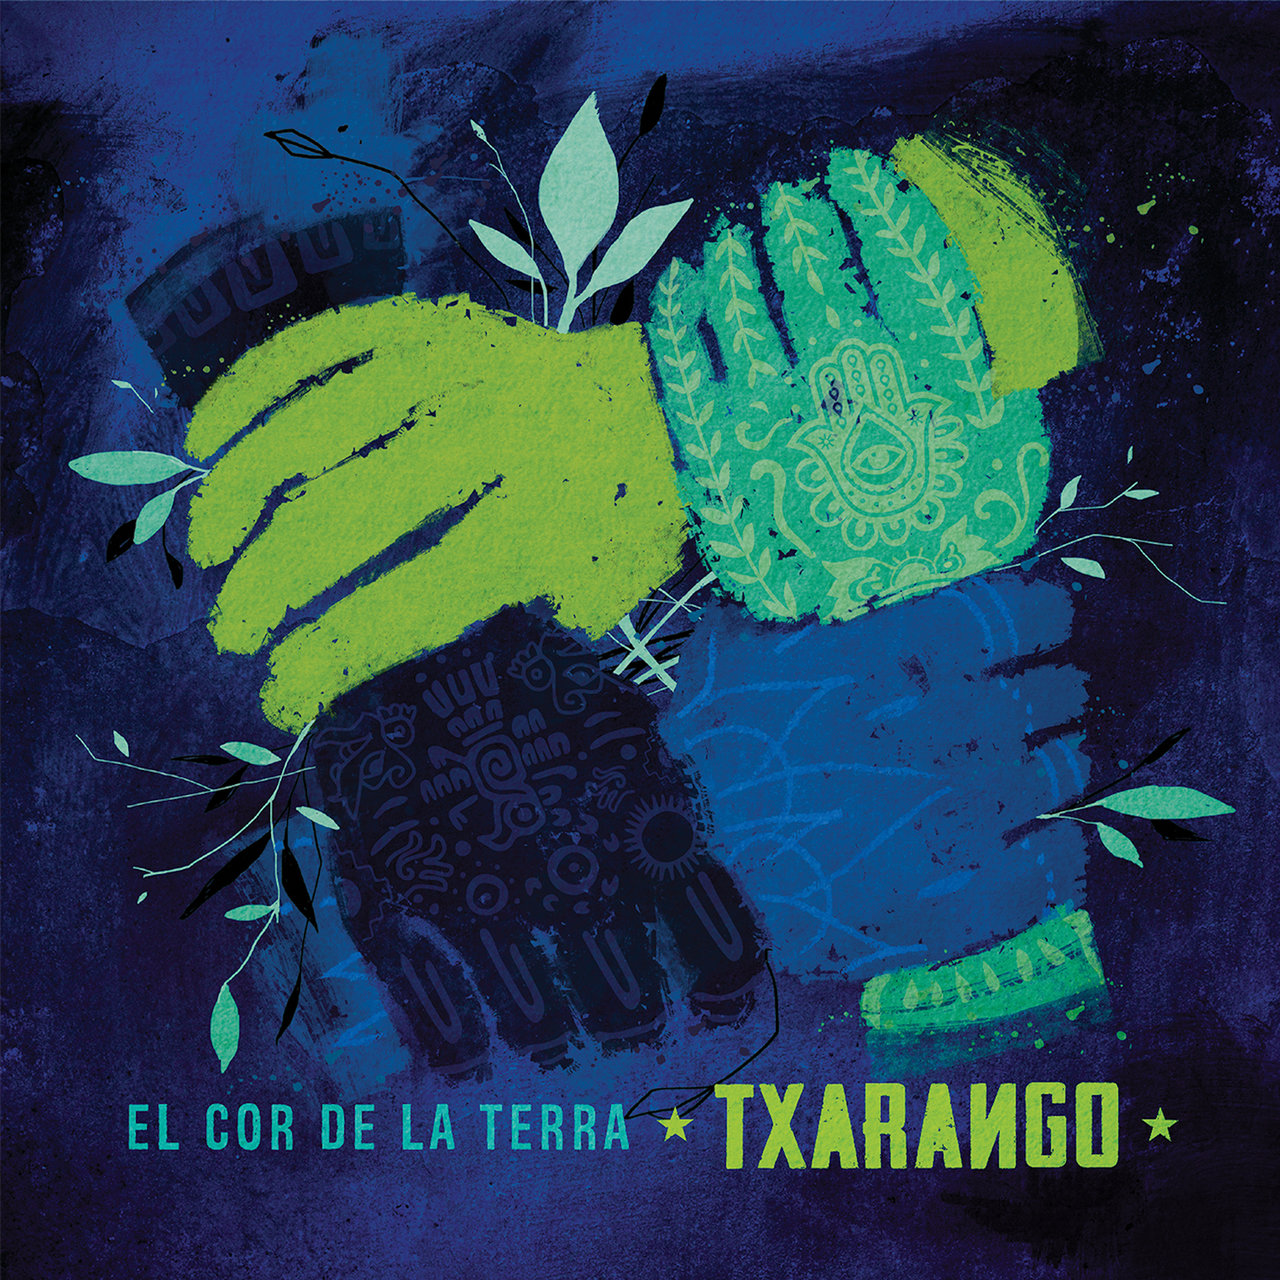 Txarango El Cor de la Terra cover artwork